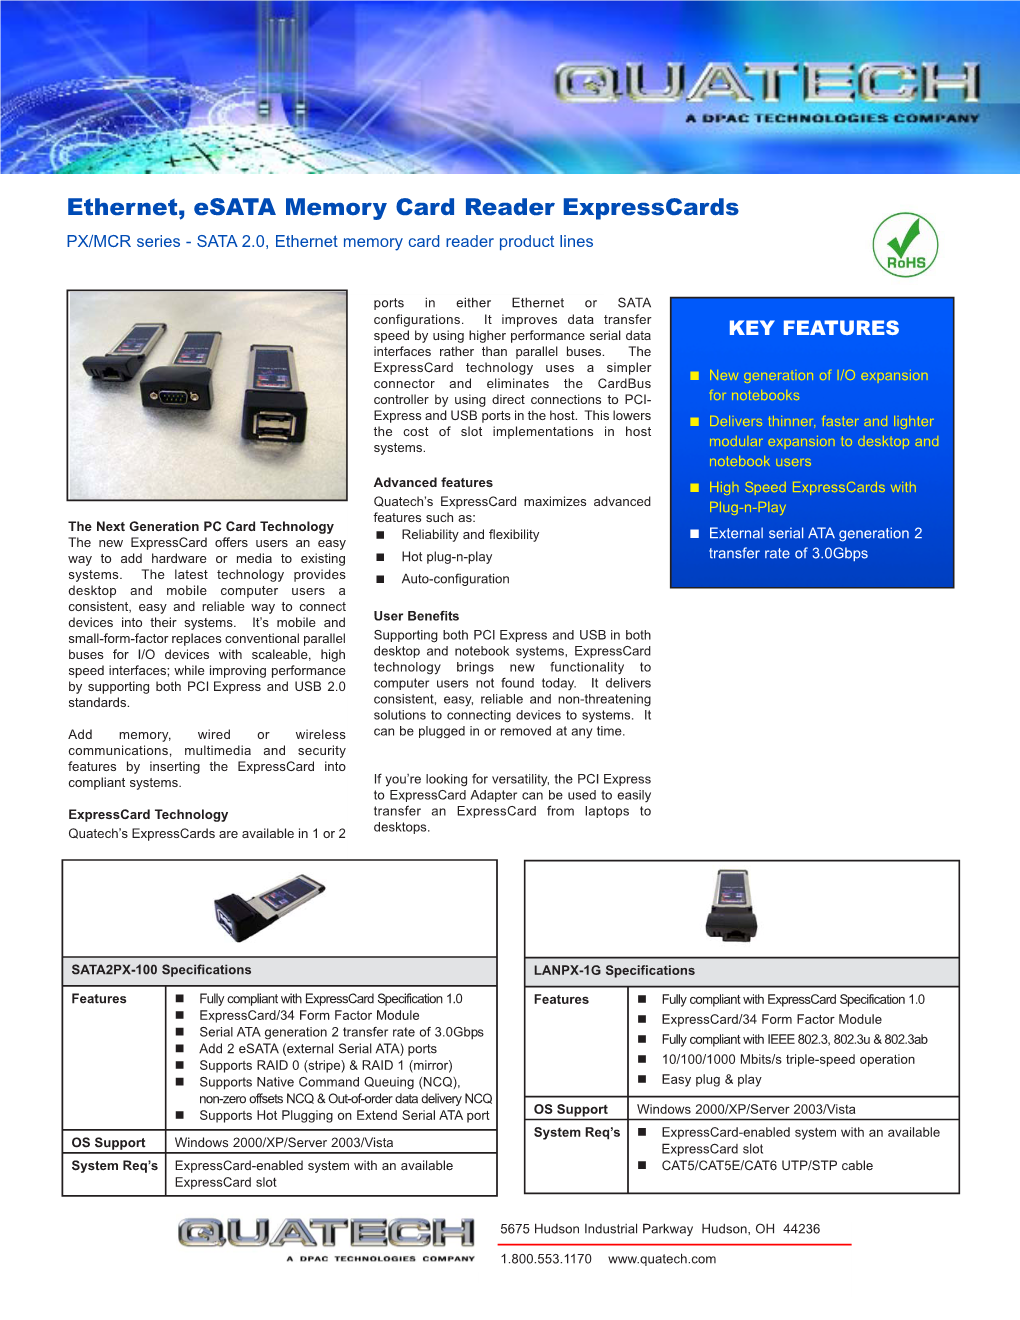 Ethernet, Esata Memory Card Reader Expresscards PX/MCR Series - SATA 2.0, Ethernet Memory Card Reader Product Lines